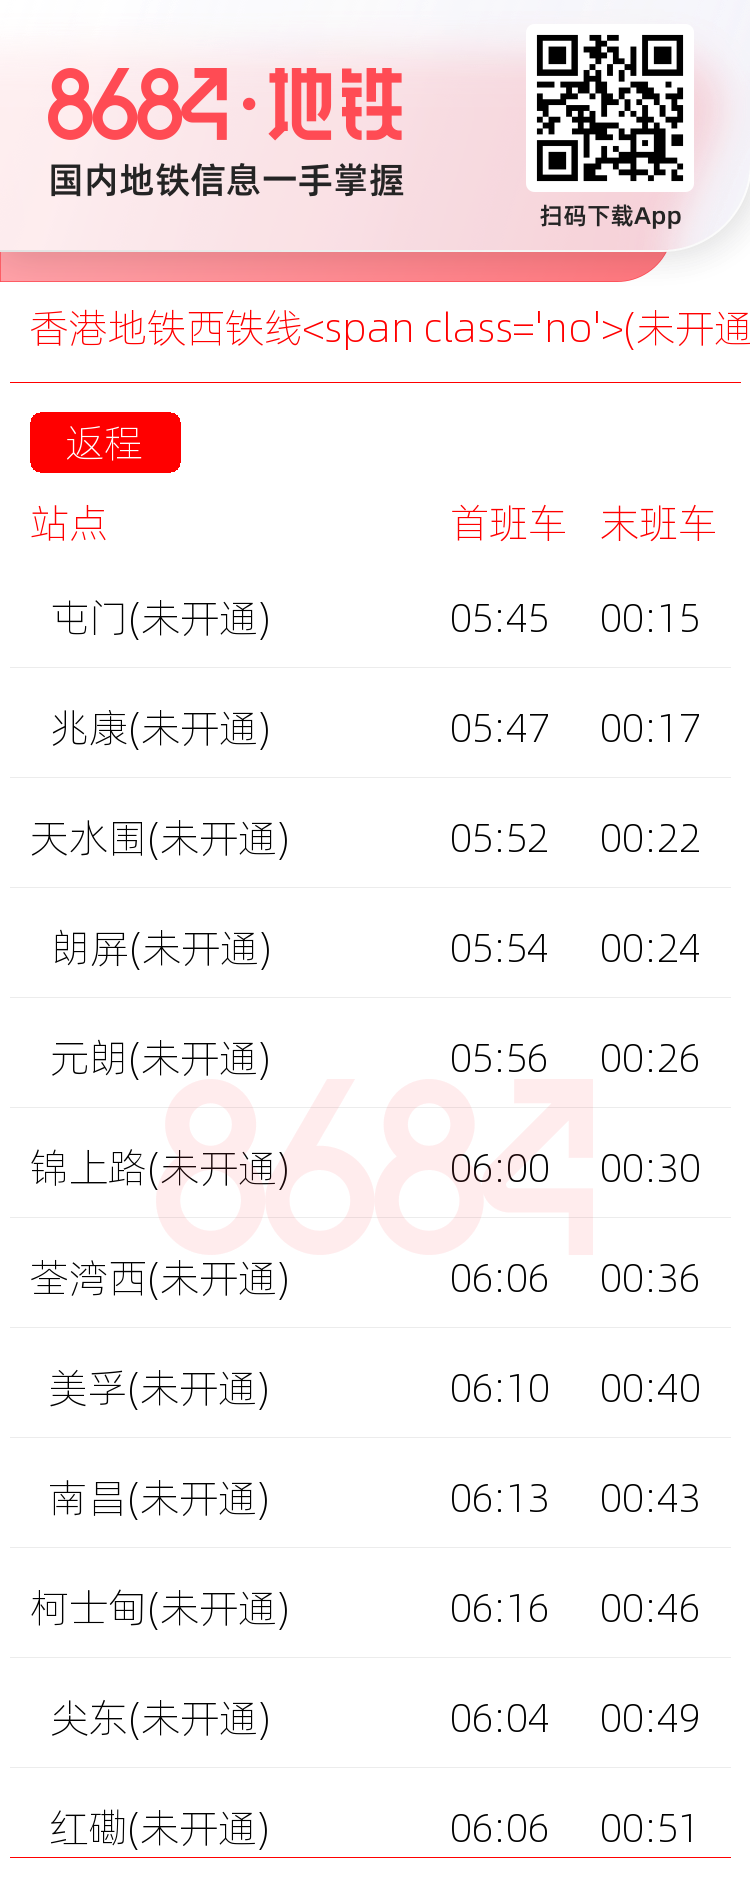 香港地铁西铁线<span class='no'>(未开通)</span>运营时间表